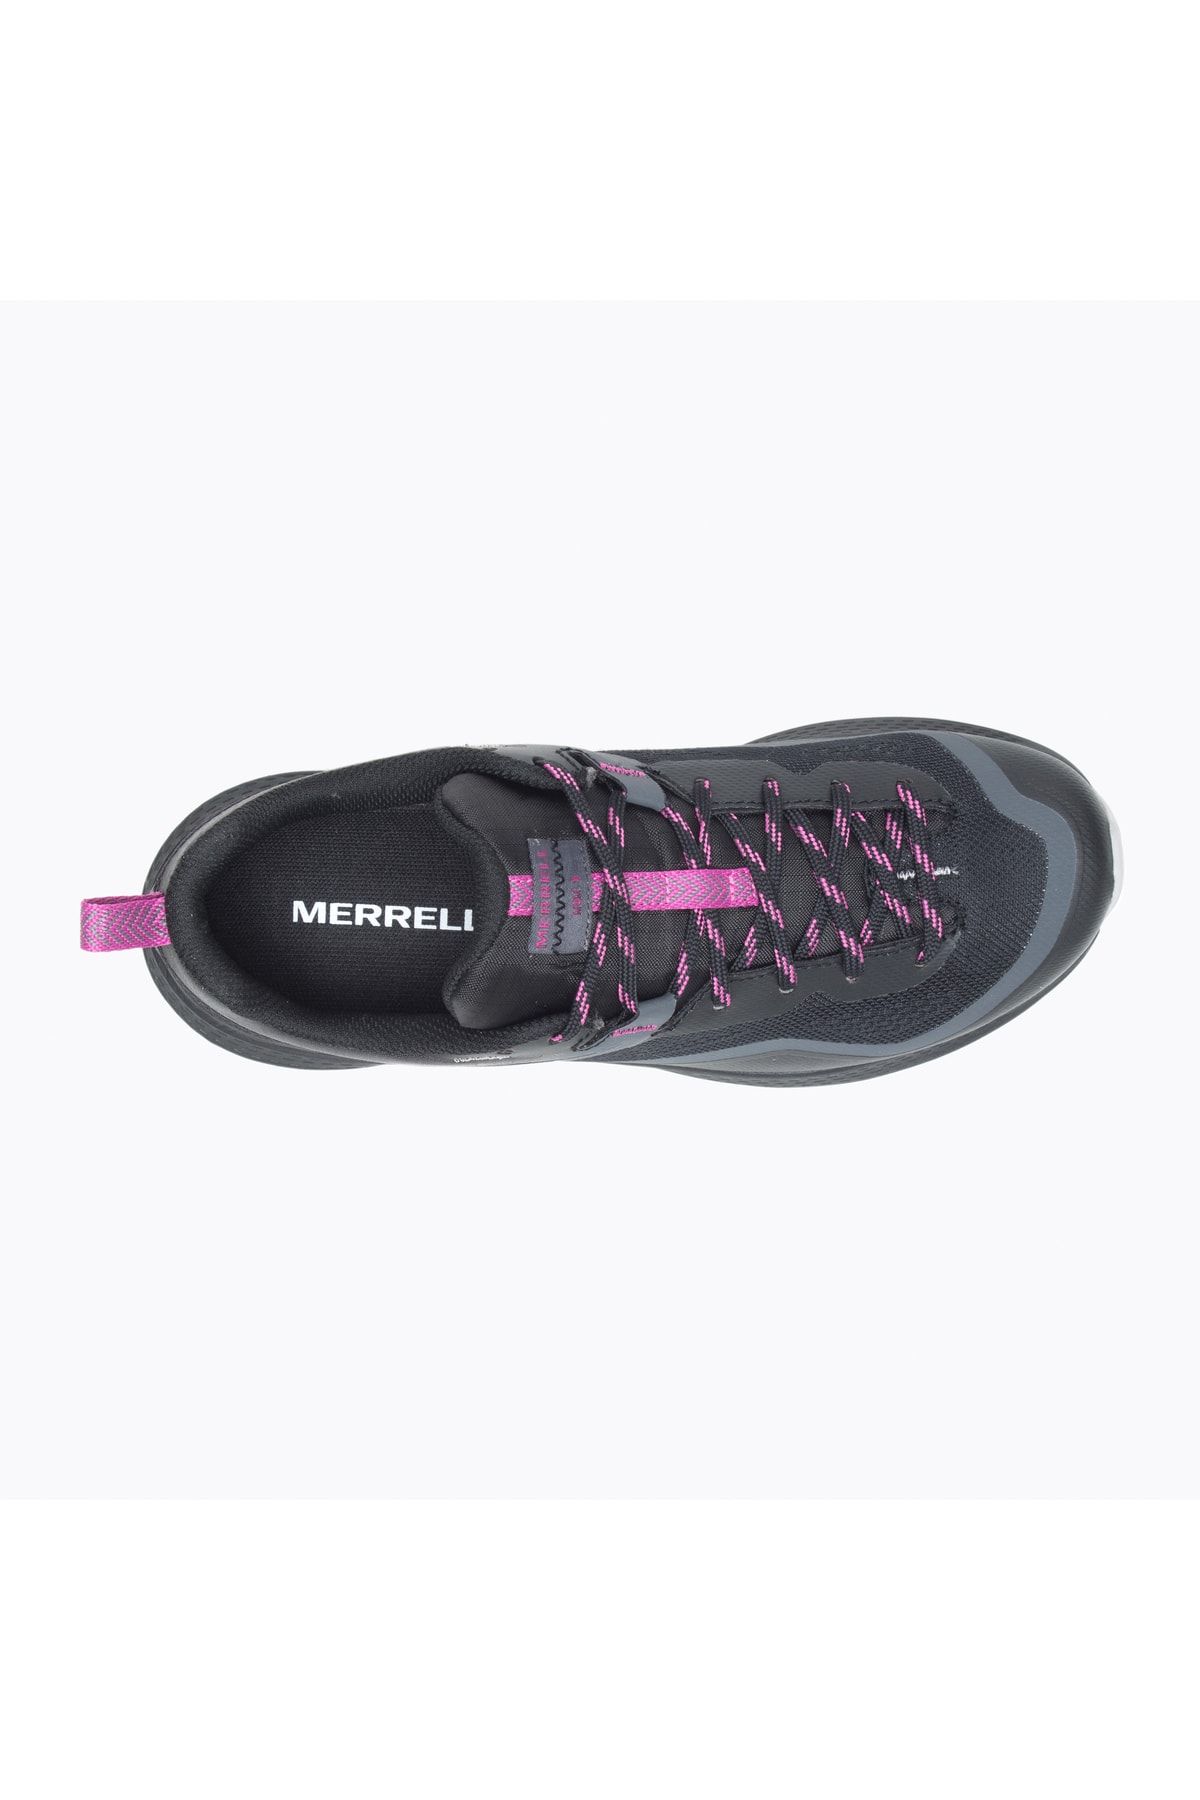 Merrell Mqm 3 Kadın Siyah Outdoor Ayakkabı